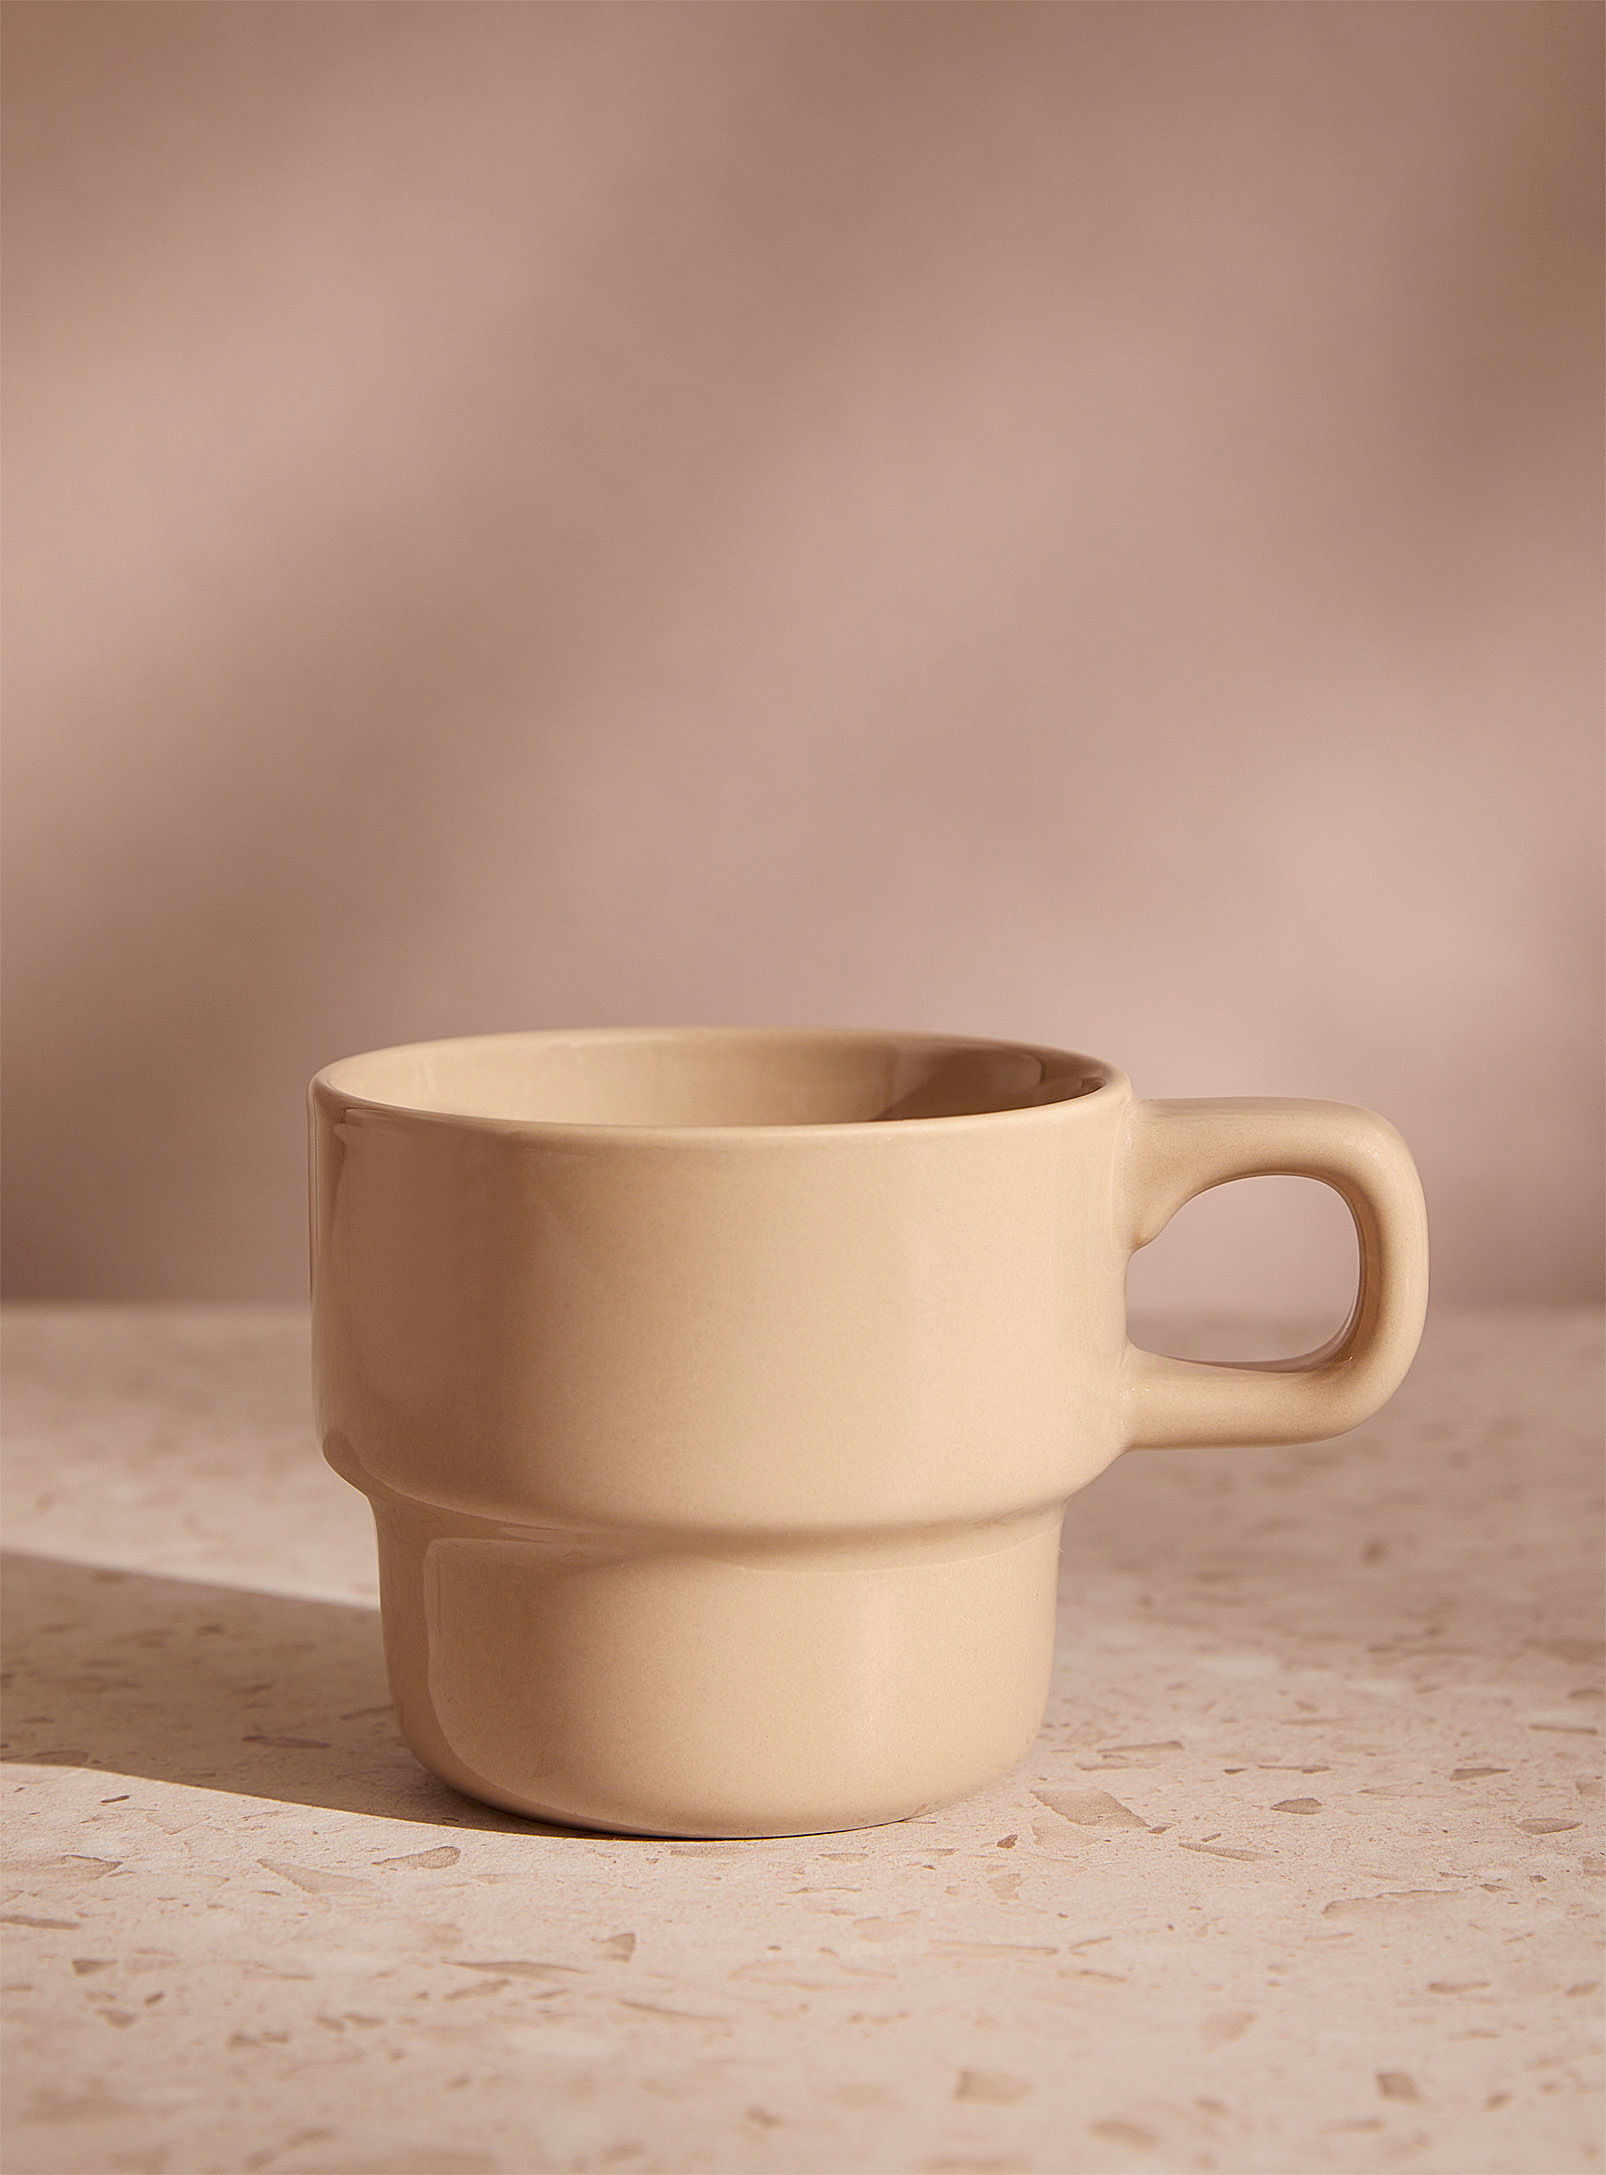 Simons Maison Porcelain Retro Small Mug In Light Brown